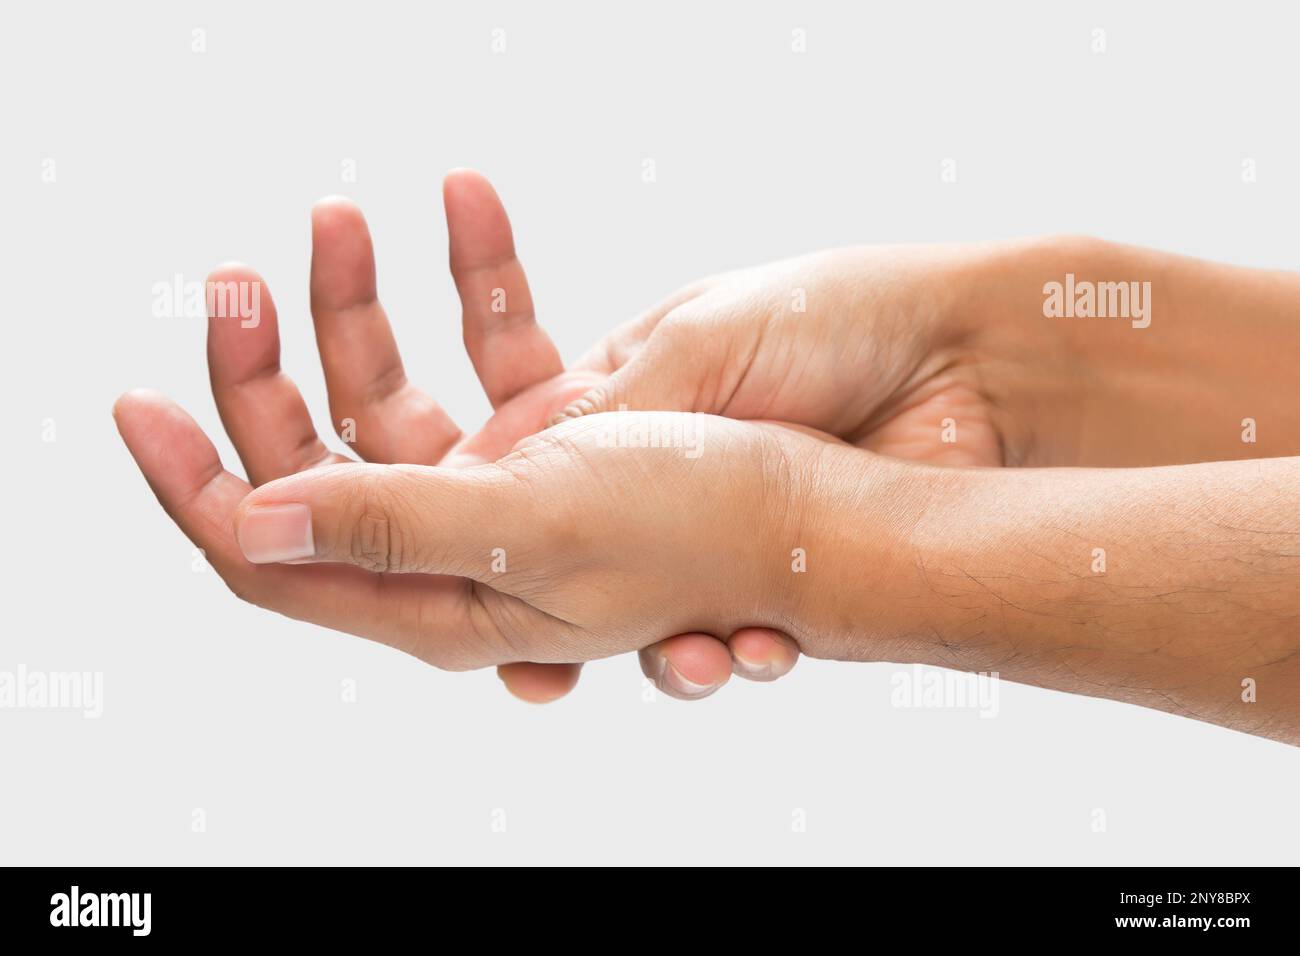 Douleur dans la paume de la main provoquée par des ecchymoses ou des blessures, isolée sur un fond de mur gris. Banque D'Images